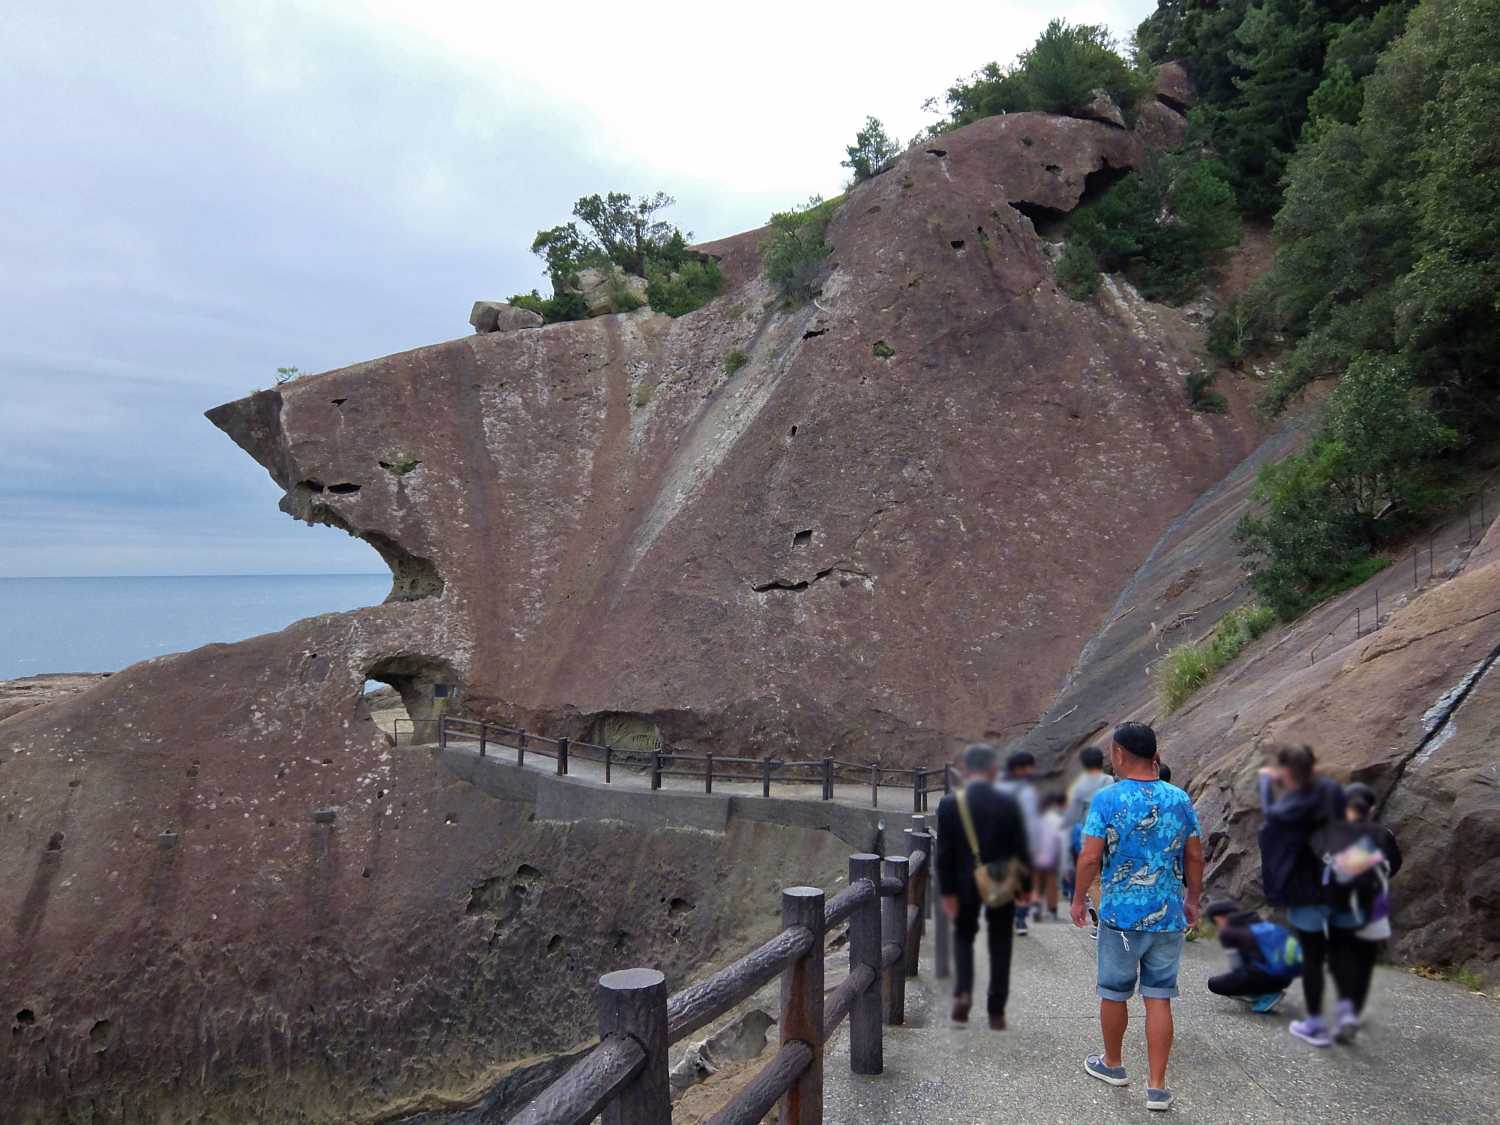 鬼ヶ城 世界遺産 熊野 三重 絶景 遊歩道 奇岩 インスタスポット